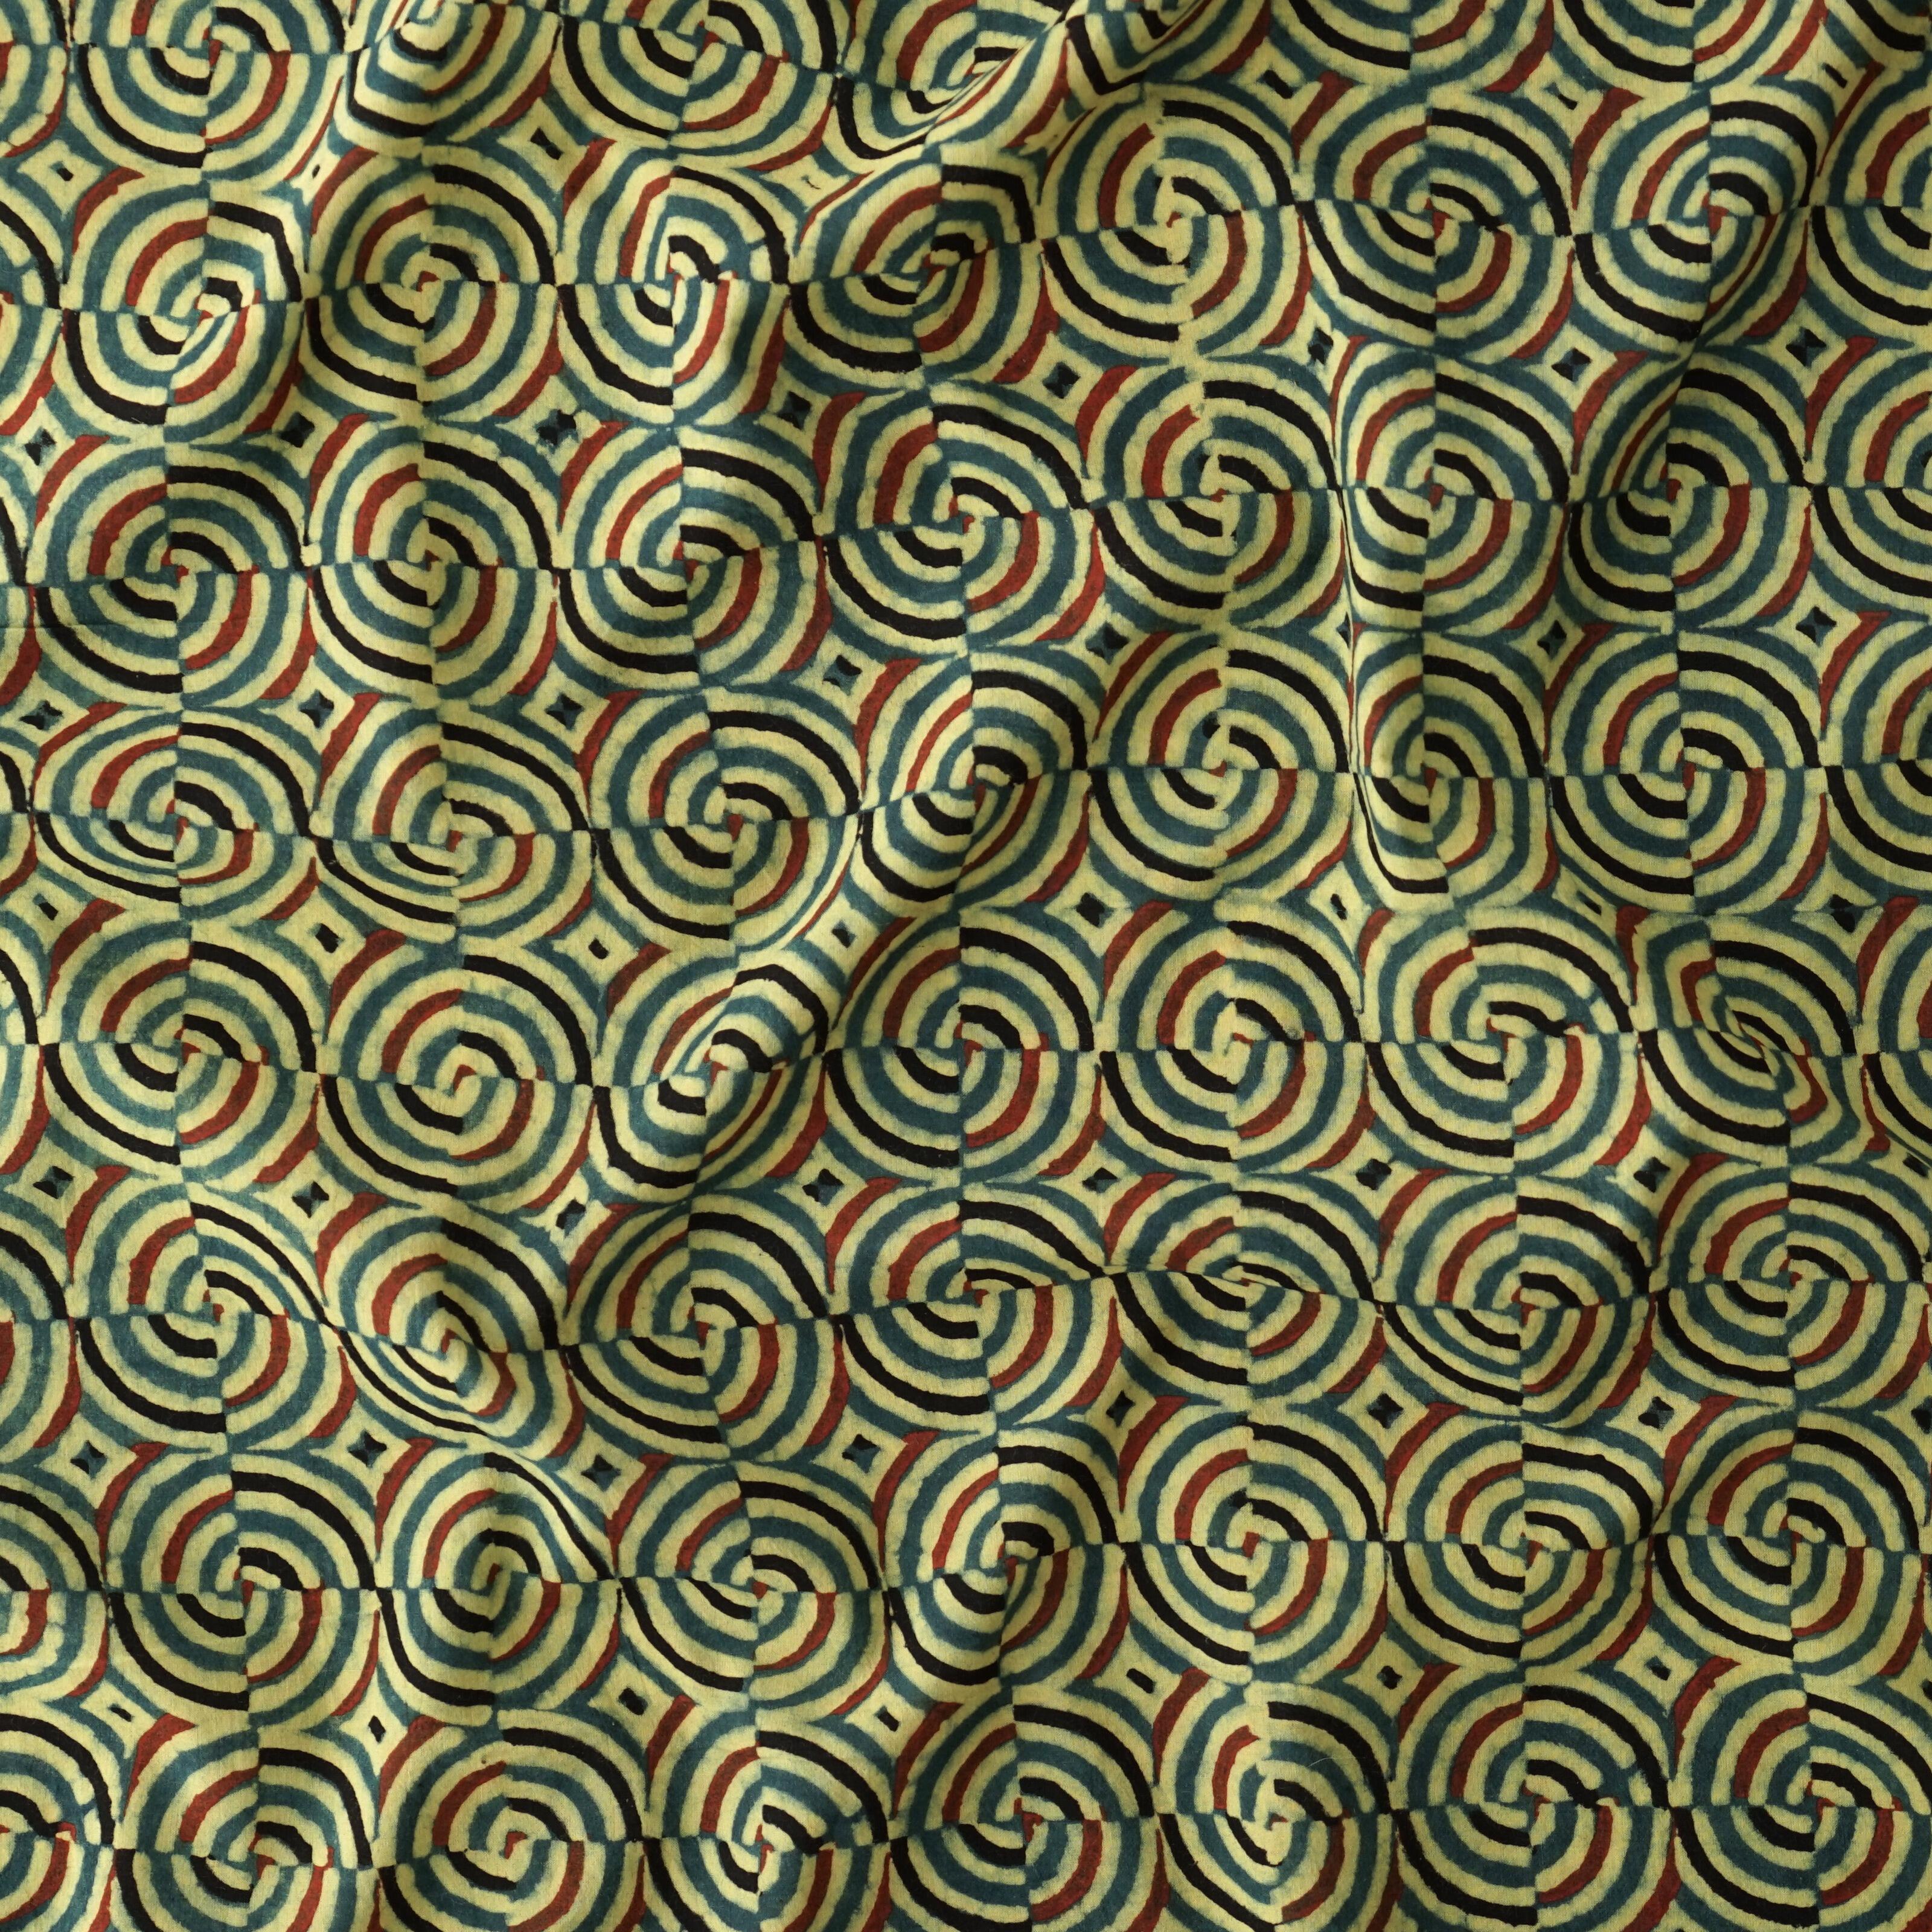 SIK41 - Wood Block-Printed Cotton - Kaleidascope Design - Green Indigo, Yellow, Red & Black Dye - Contrast